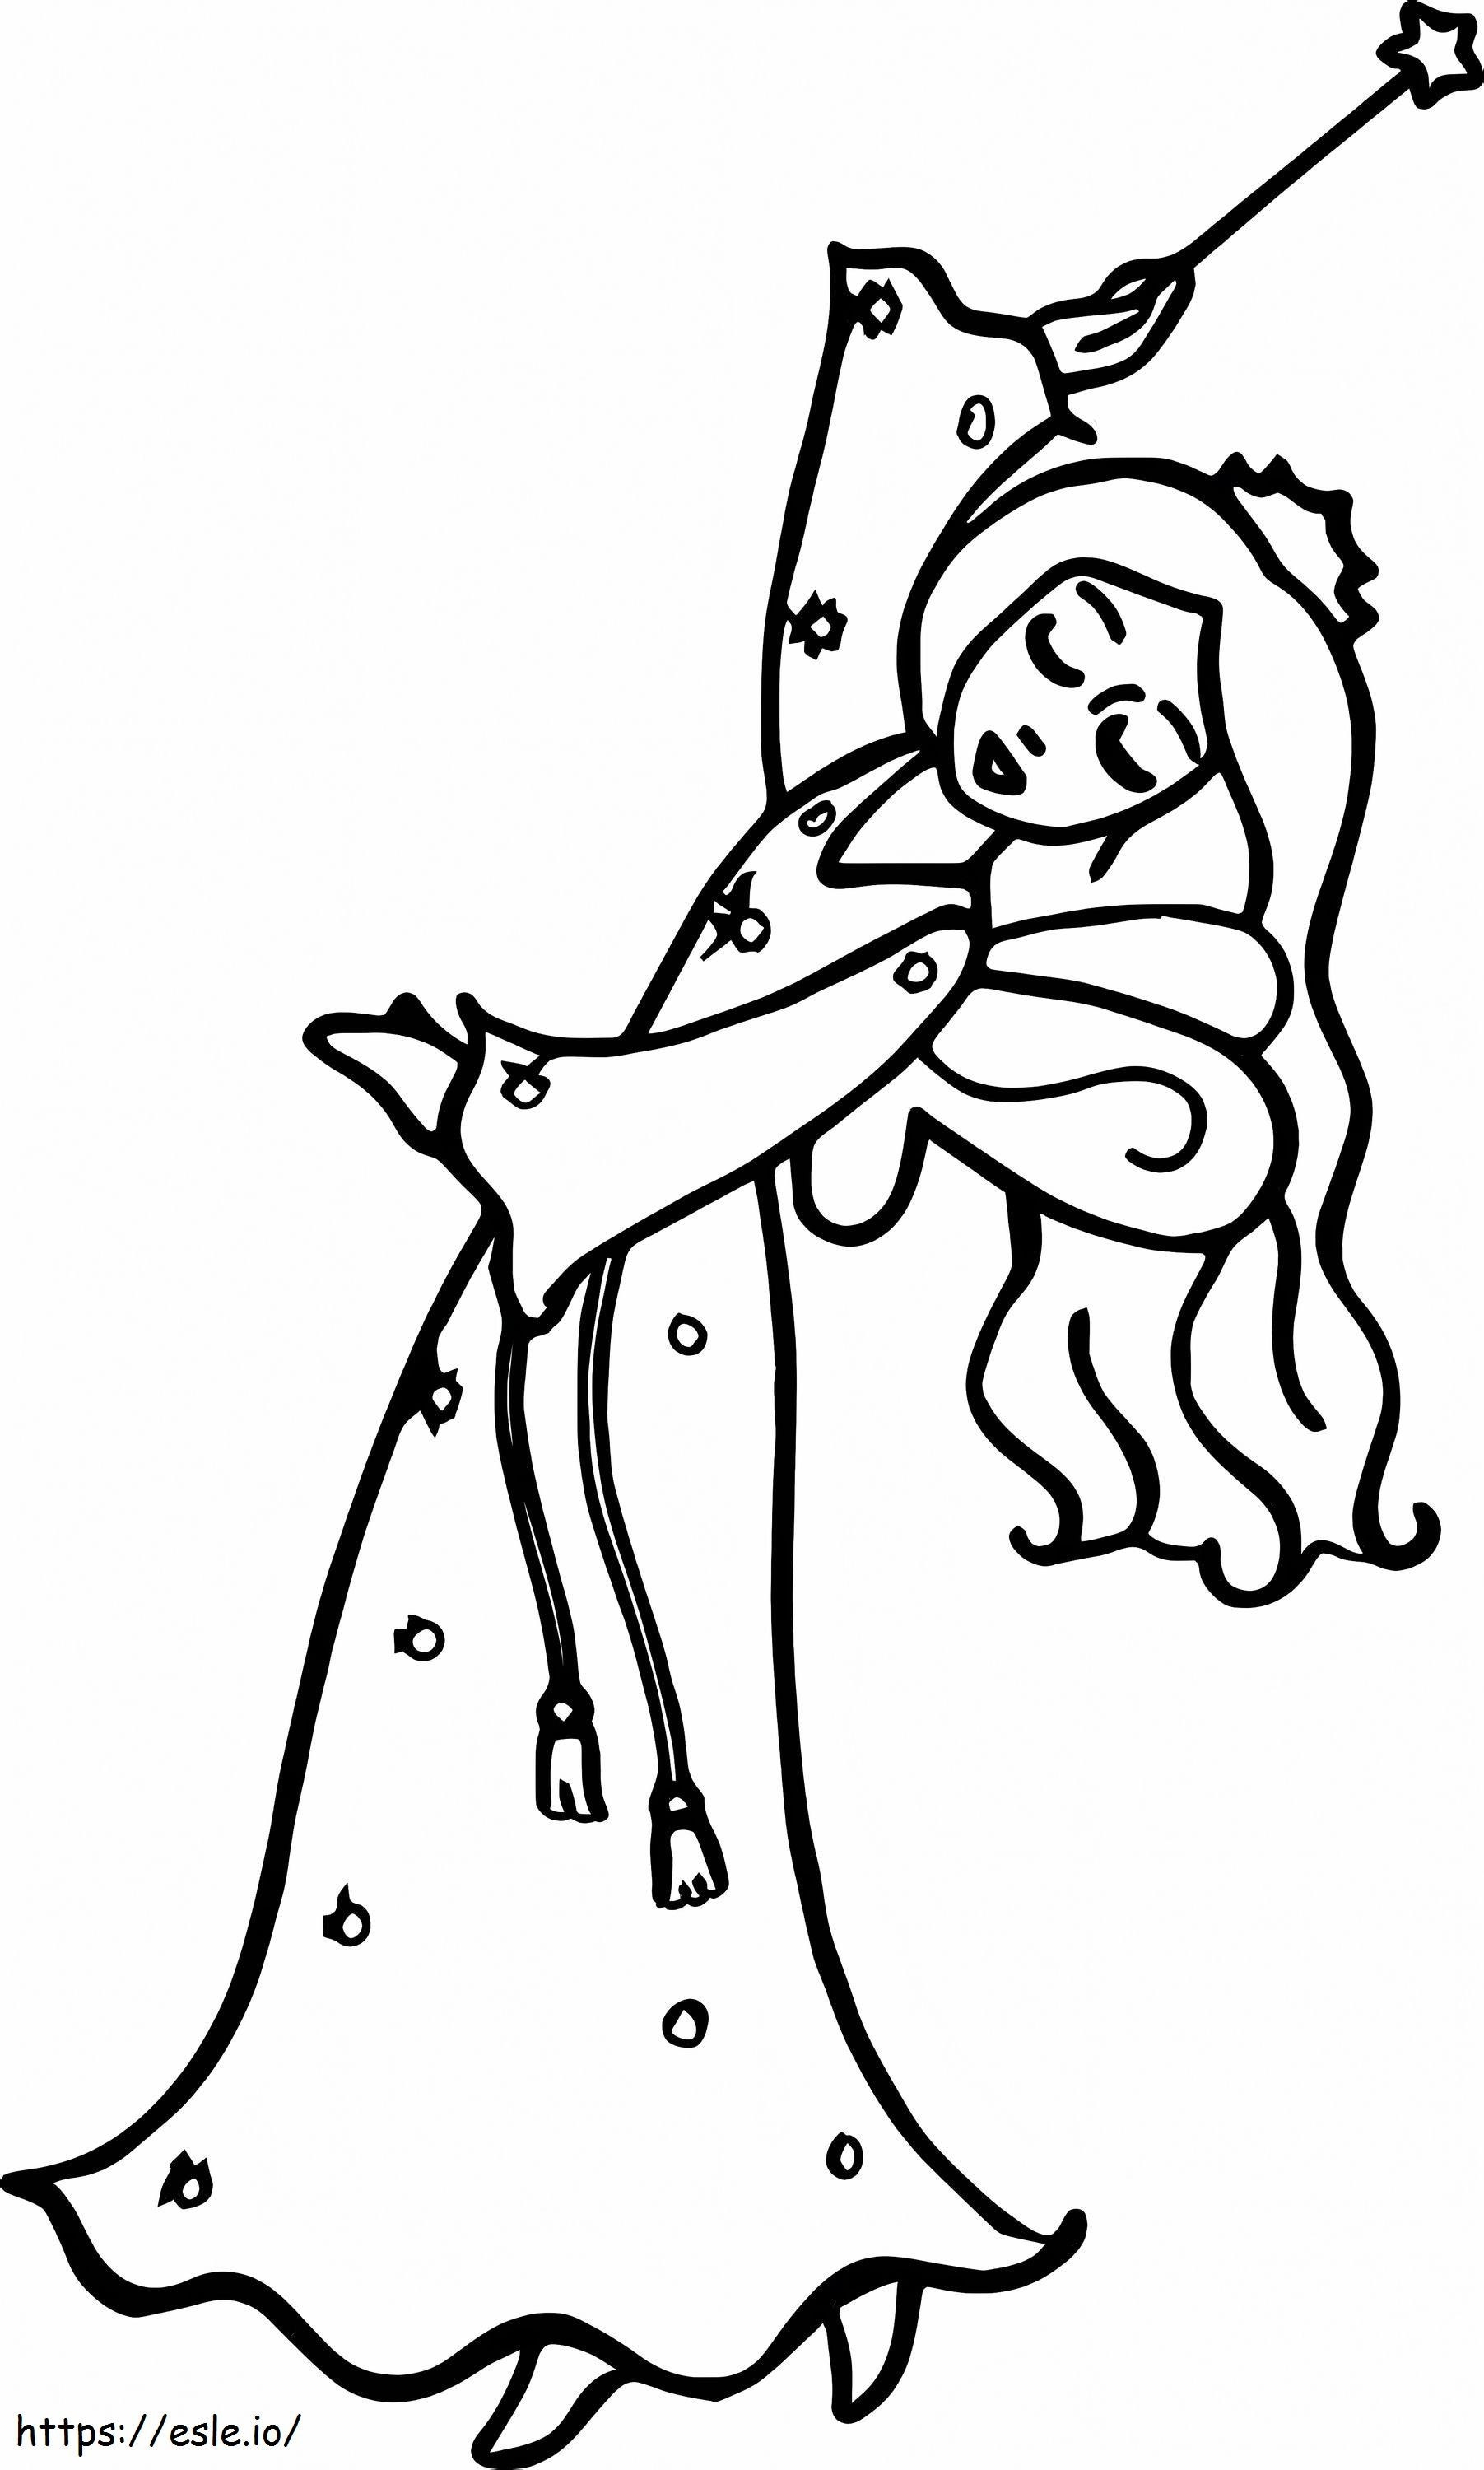 Princess Holding Magic Wand coloring page